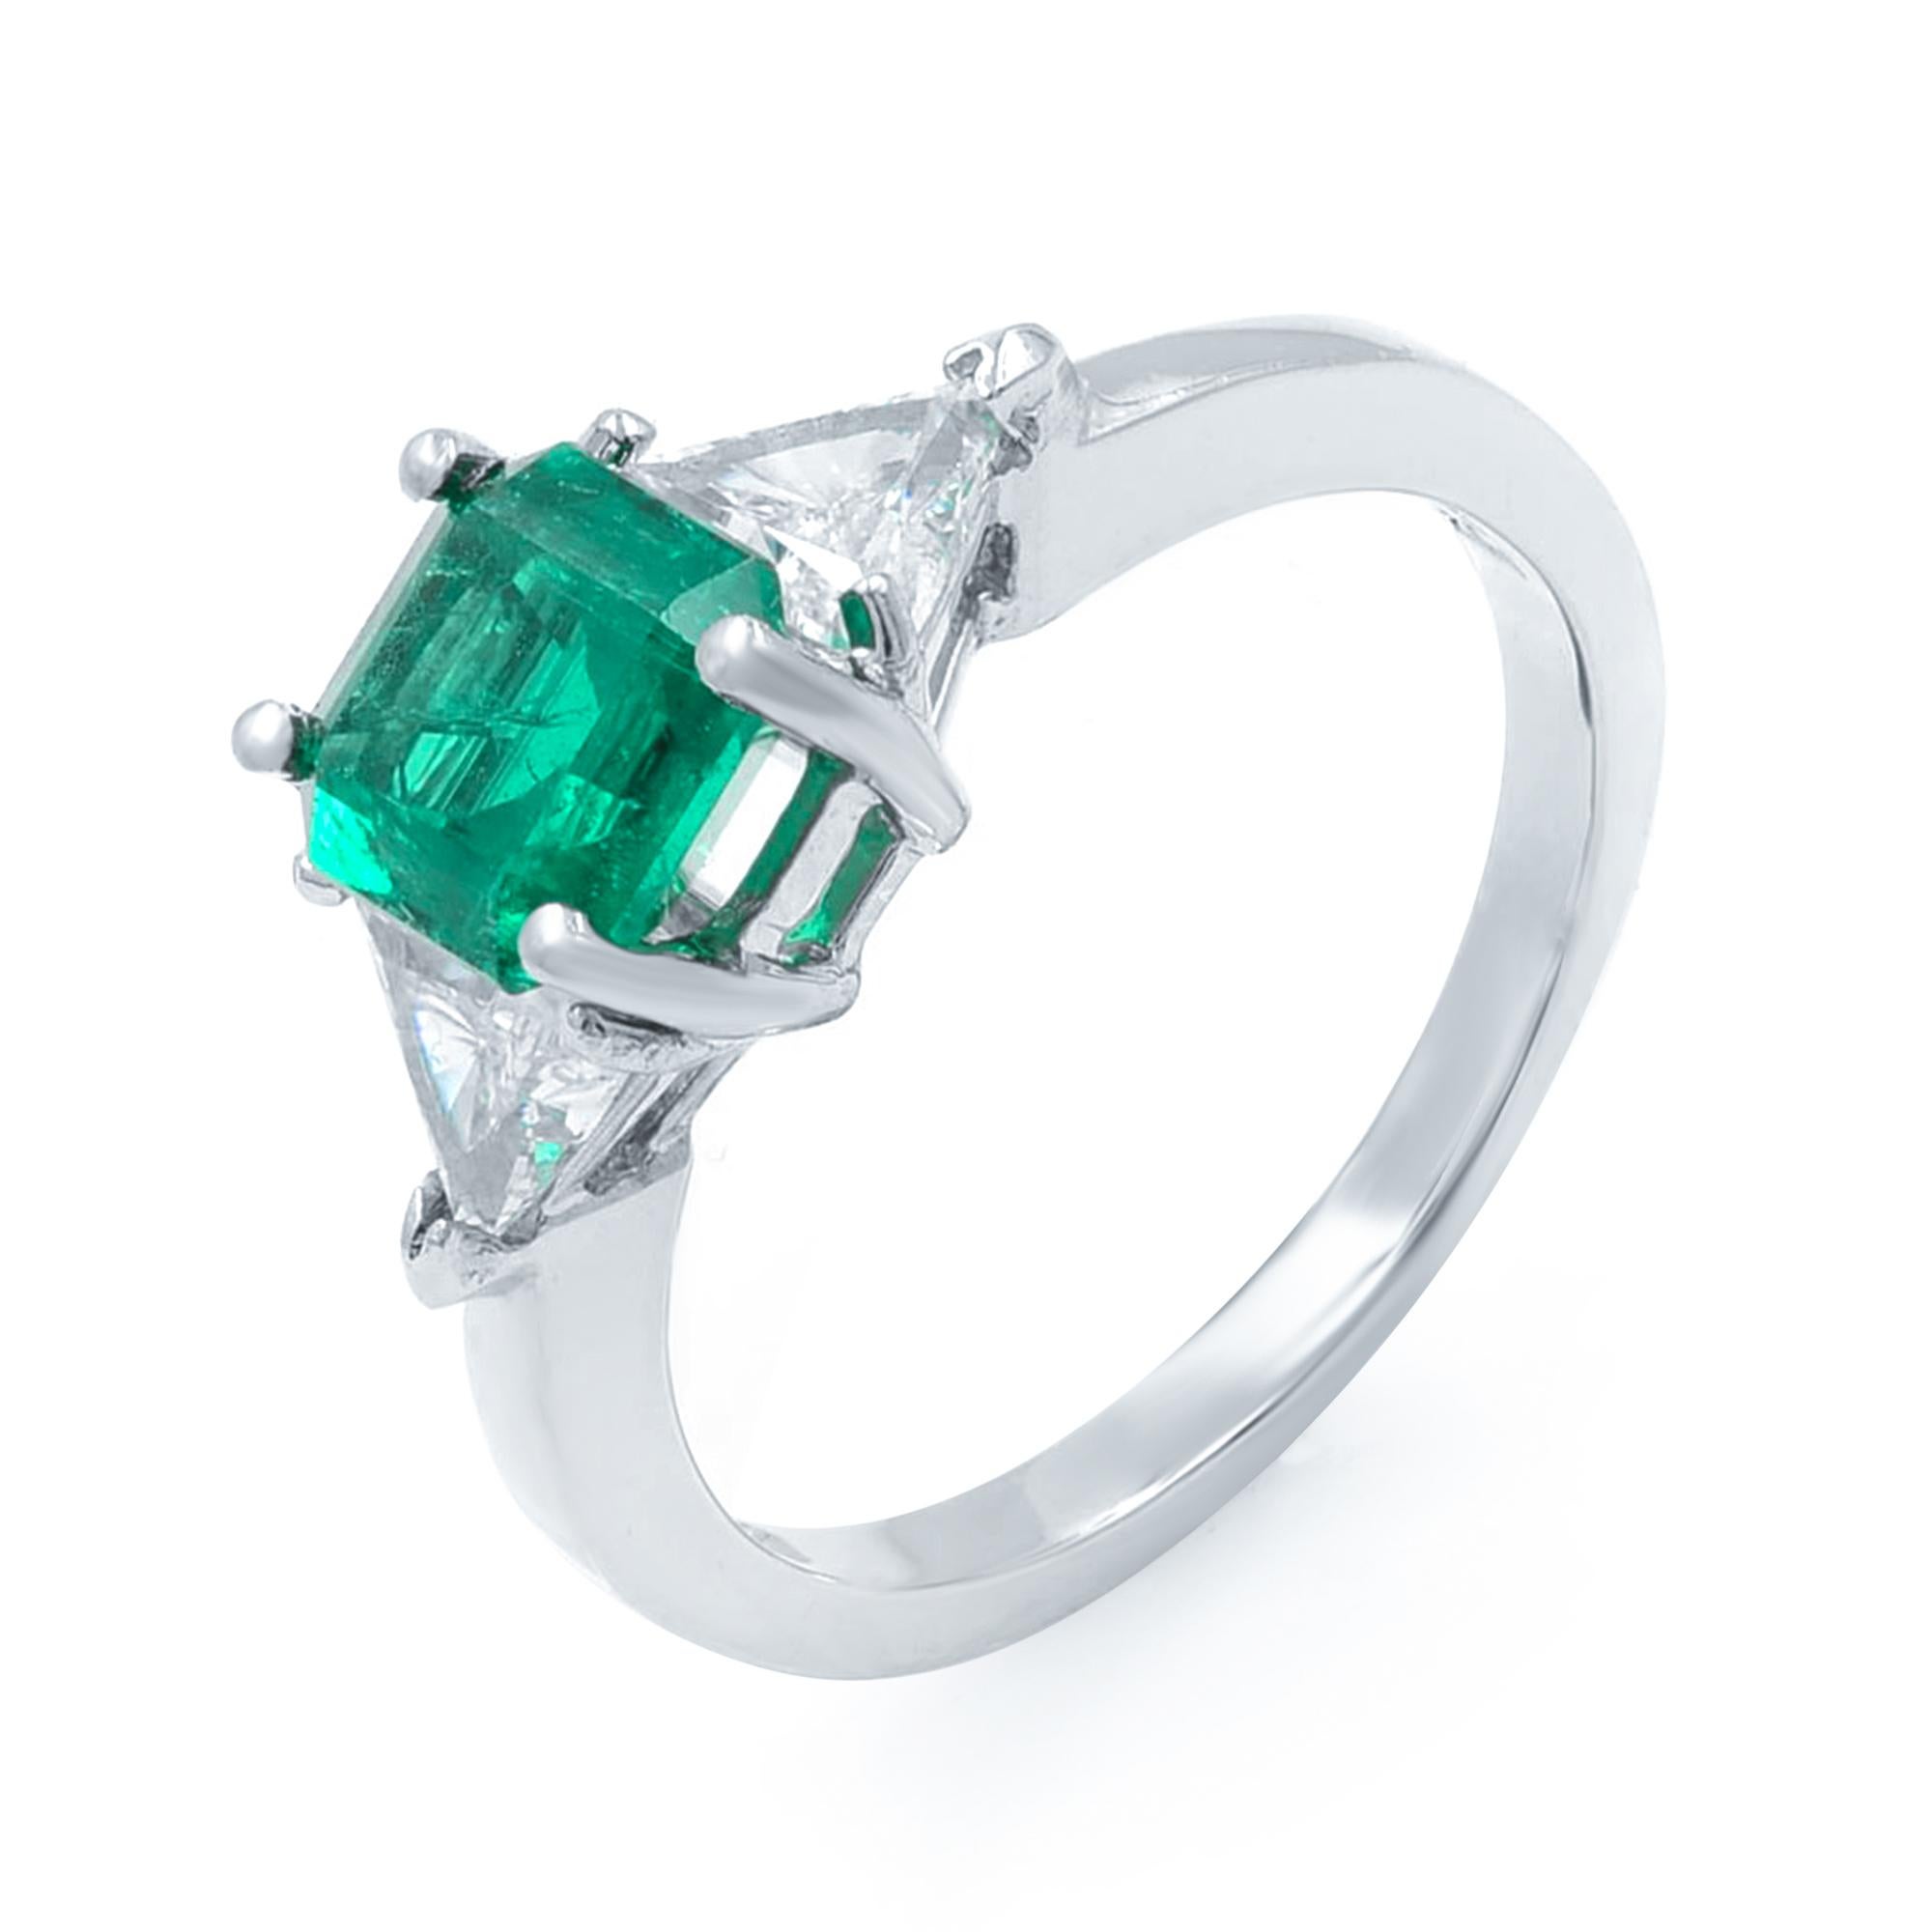 Asscher Cut Rachel Koen Green Emerald Diamond Three Stone Ring Platinum 1.80Cttw For Sale